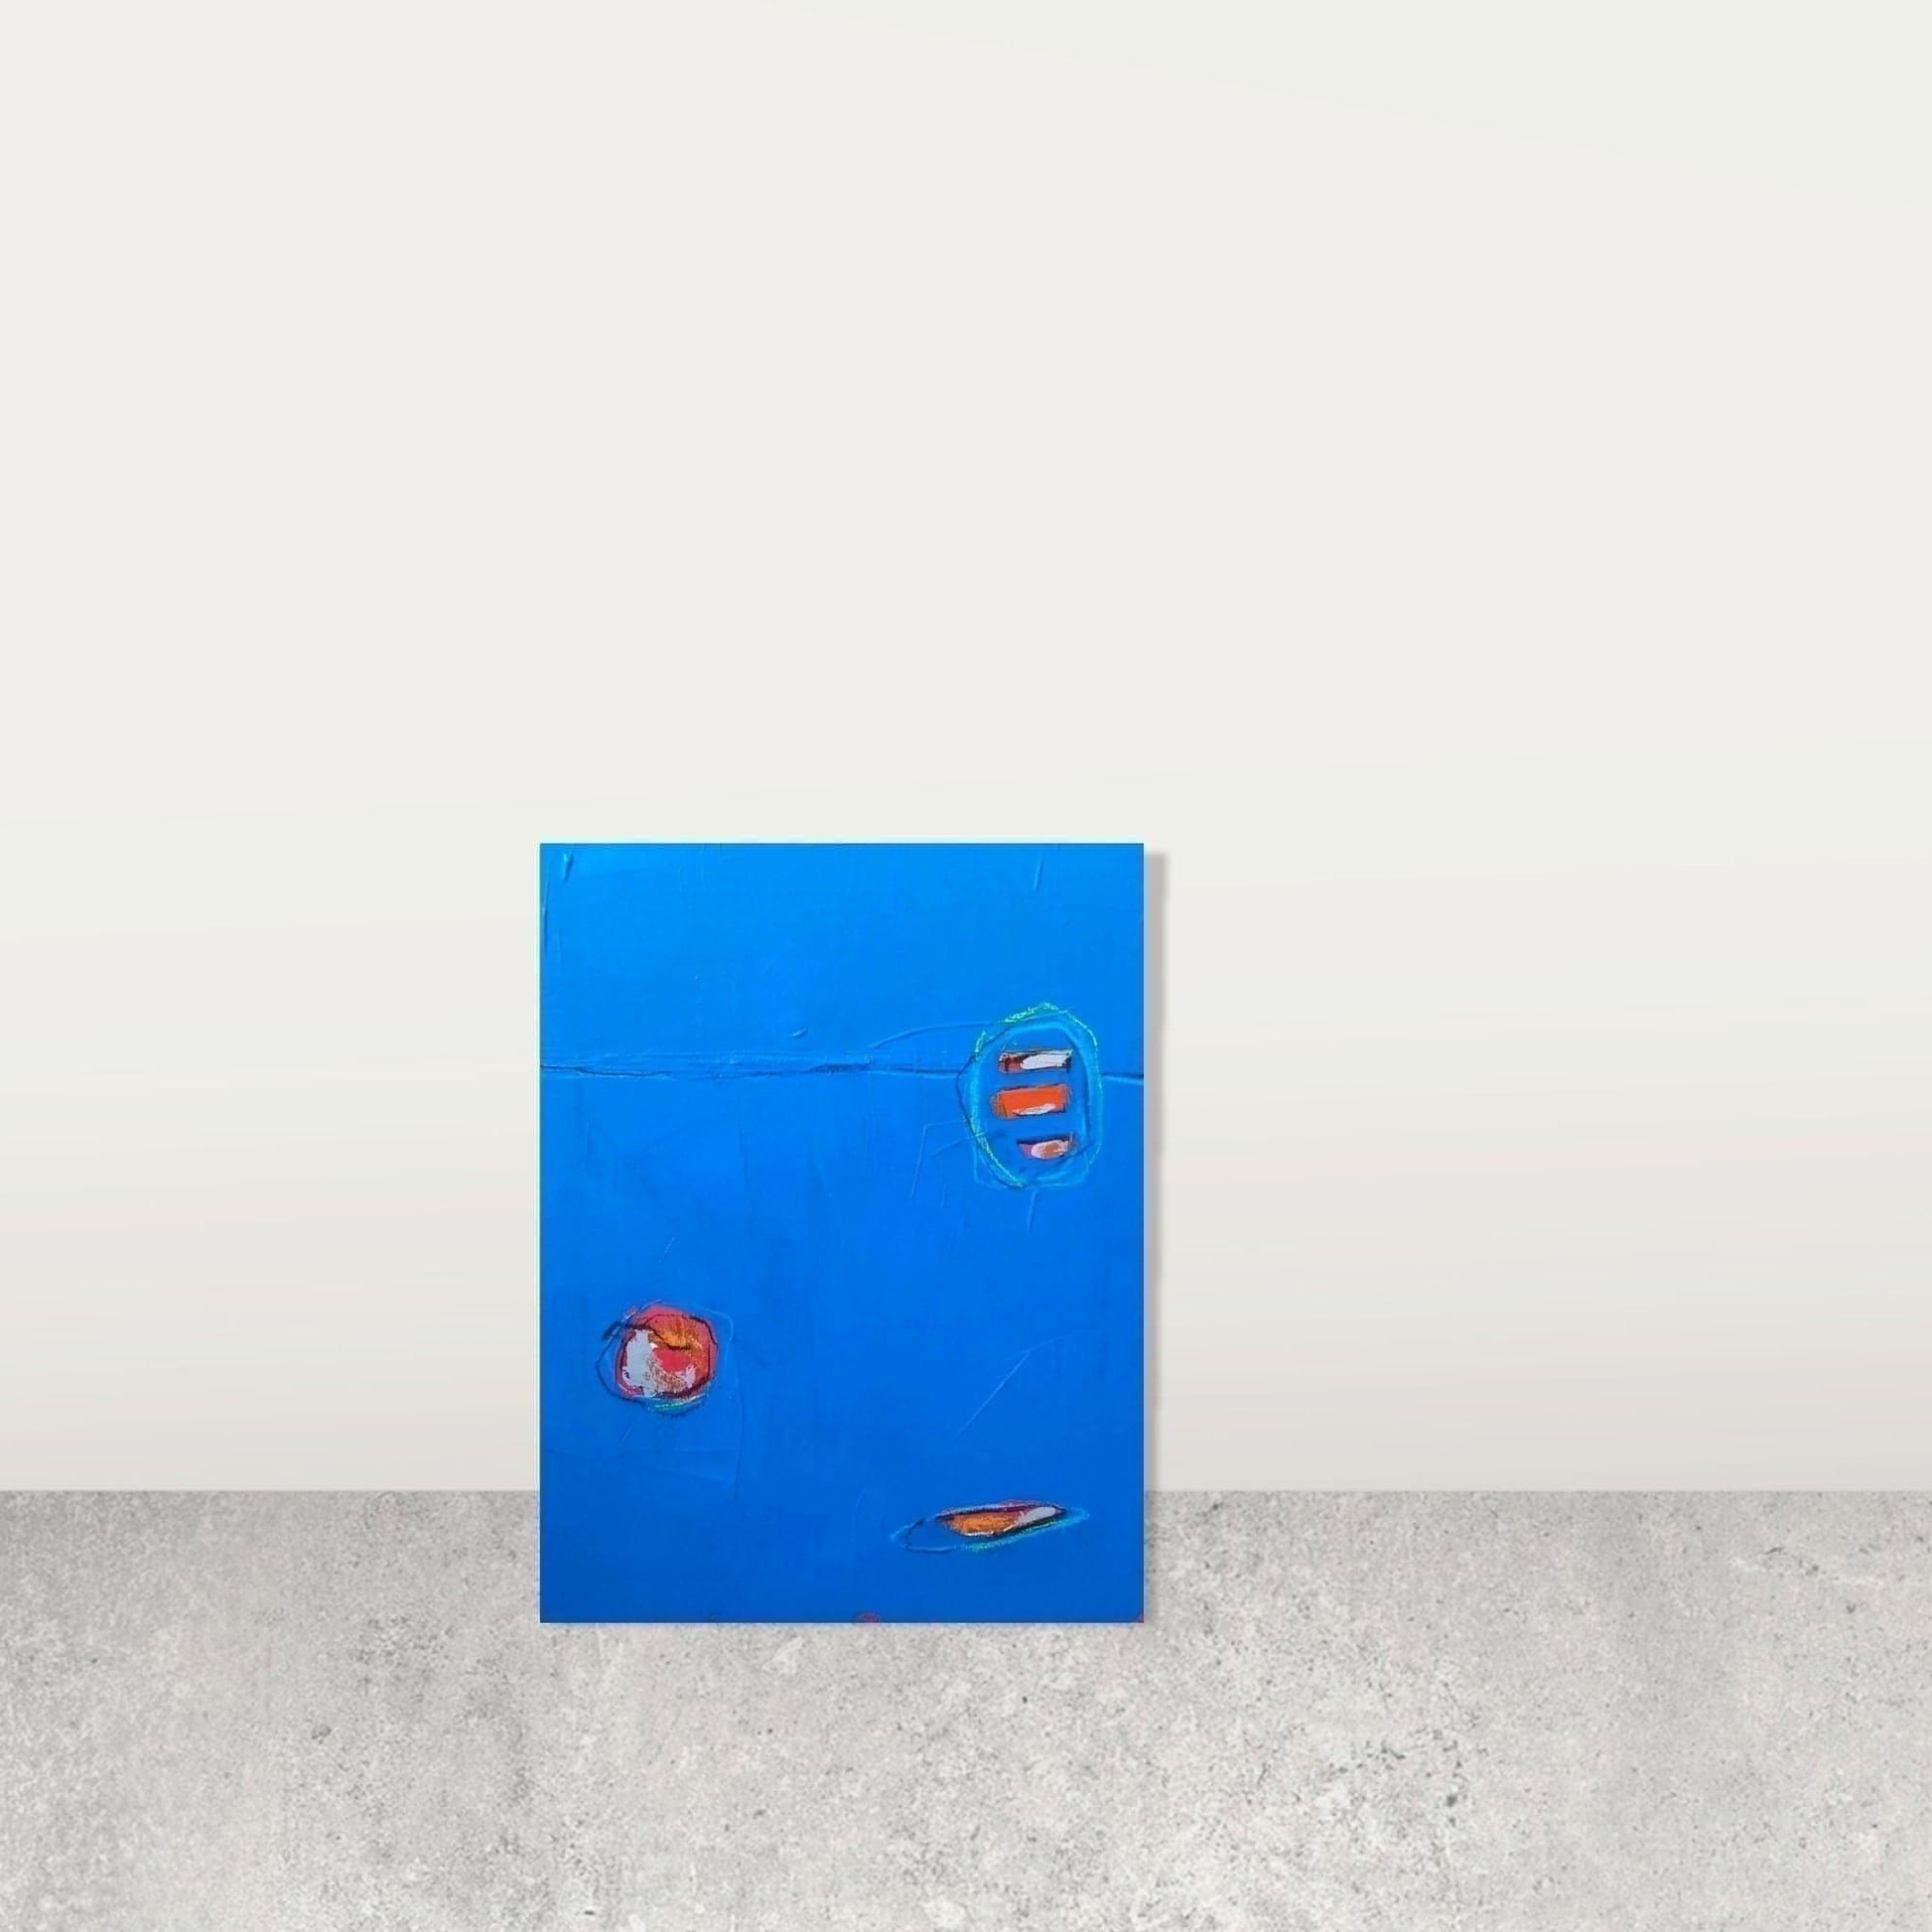  vorhandenes Unikat: Soup to go / 50 x 40 cm / blau  abstrakte acrylbilder auf leinwand